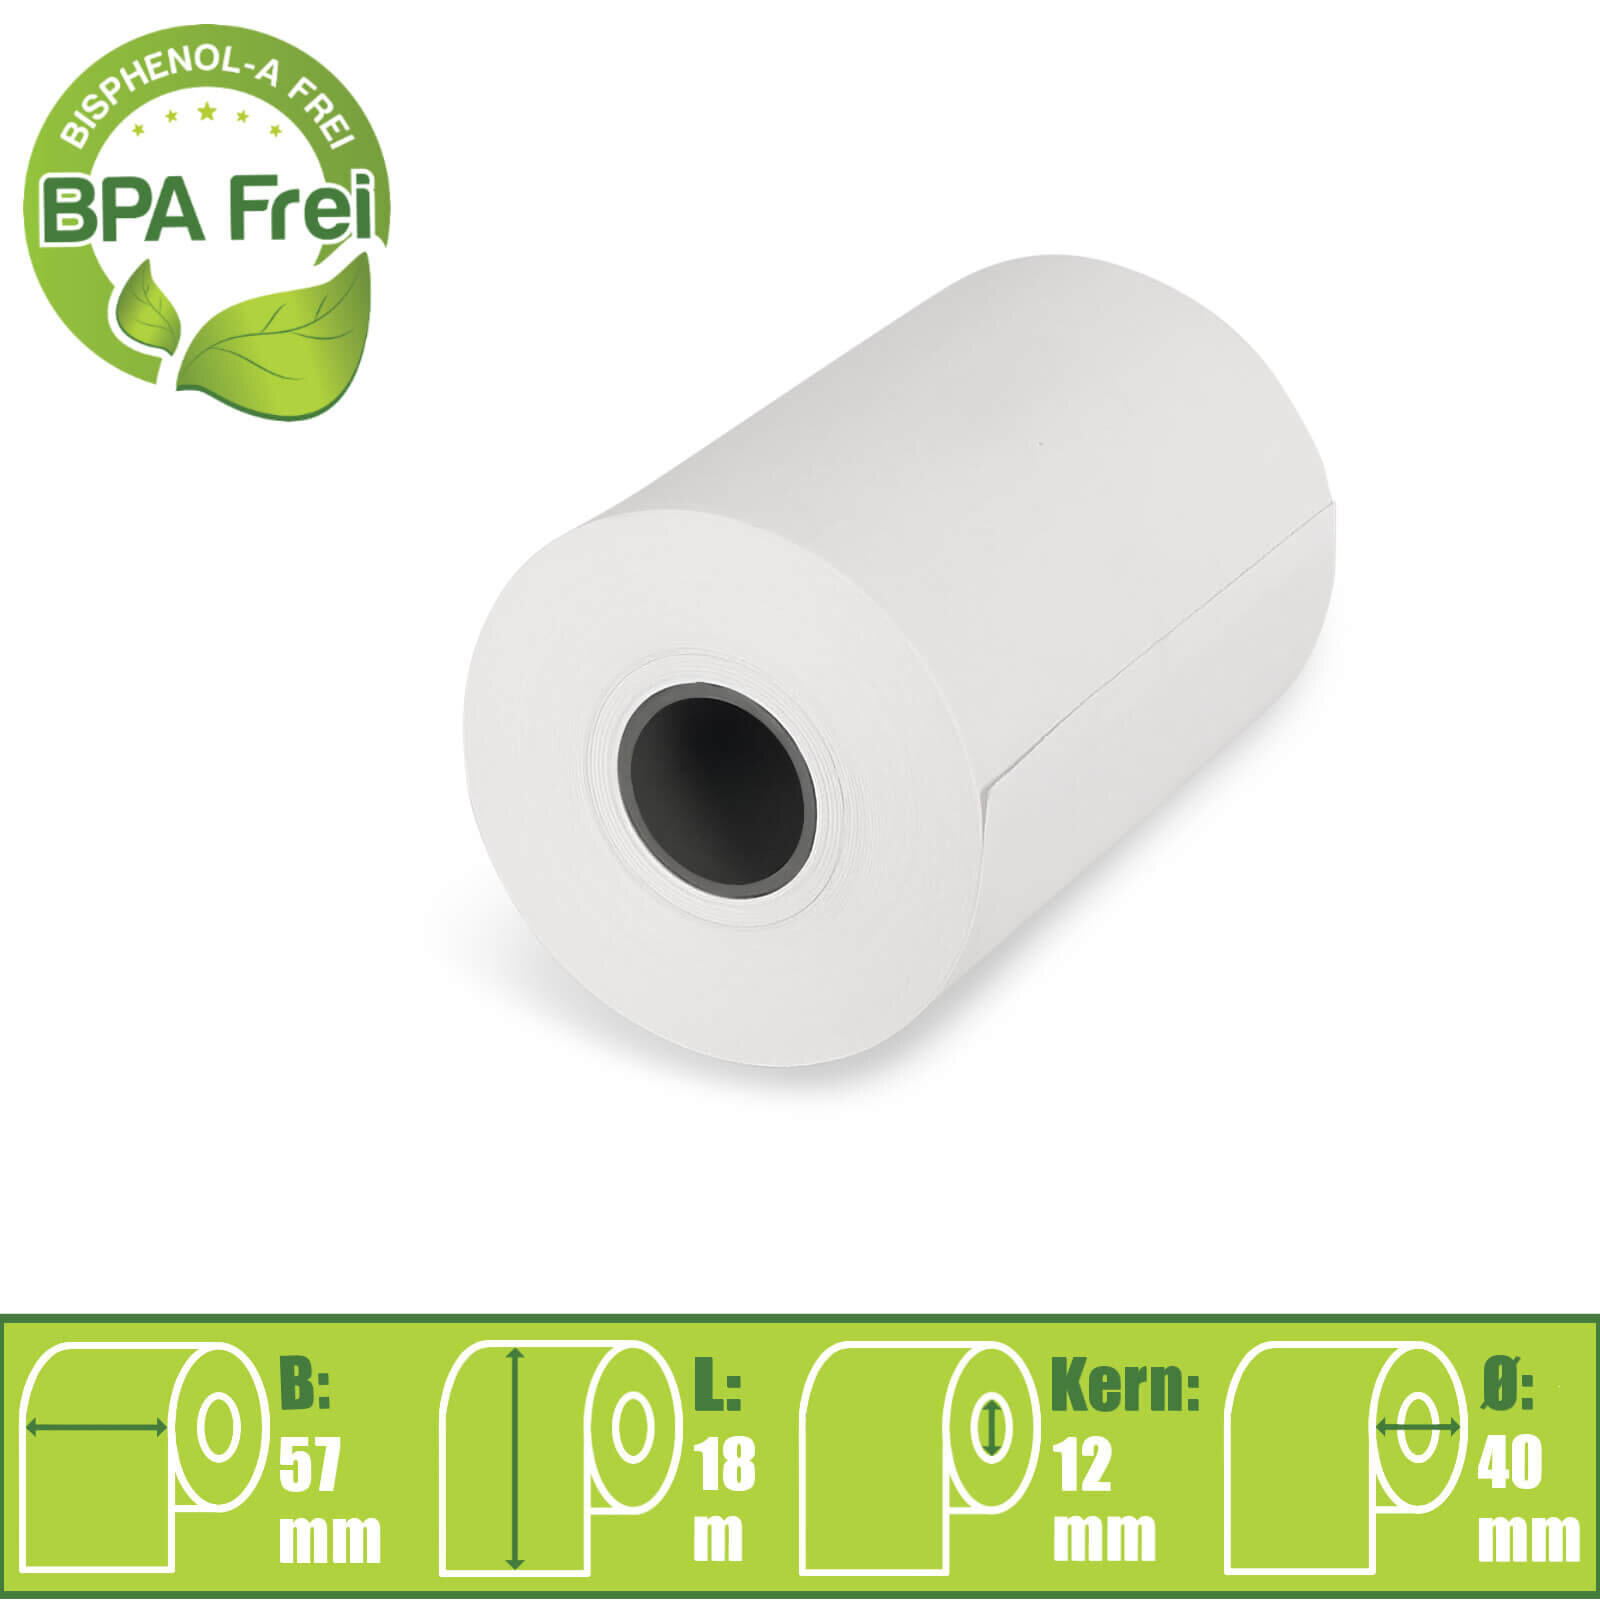 57mmx18mx12mm BPA frei online